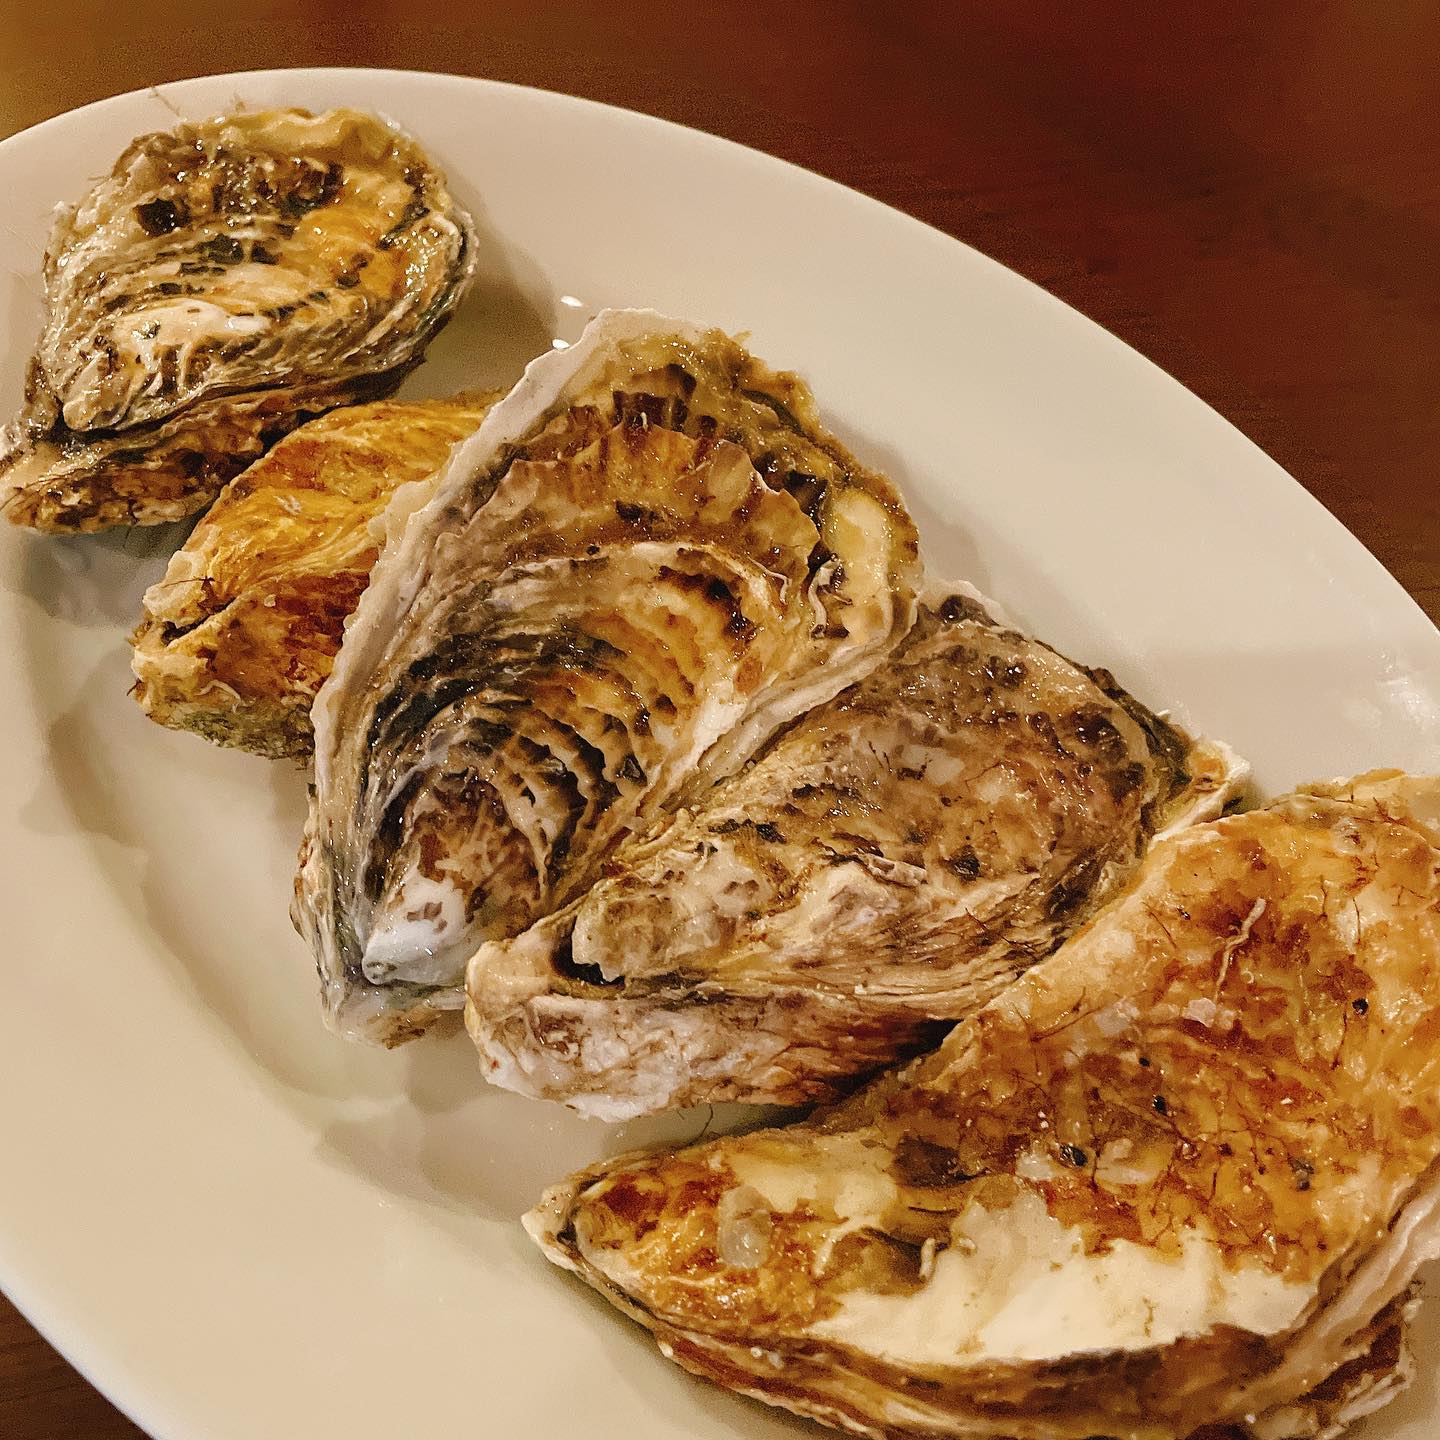 北海道、仙鳳趾の牡蠣入荷しました🦪

クリーミーで濃厚な美味しい牡蠣です。
まずは生でどうぞ
レモンとオリーブオイルでシンプルにお出しします。(テイクアウト不可です)

本日も宜しくお願いします🏻


10月末までのキャンペーン
①ご予約時インスタ見たで乾杯スプマンテサービス
②ボトルワイン2本目半額(一部対象外)

24日(日)はイベント出店
#牡蠣　 使えます
#カウンター席　あります
美味しいグラスワインあります
#肉の盛り合わせ　 手打ちパスタ　ピッツァ
#イタリア料理　
パラヴィーノワインアカウント
@paravino.vino
パラヴィーノテイクアウトアカウント
@paravino.takeout